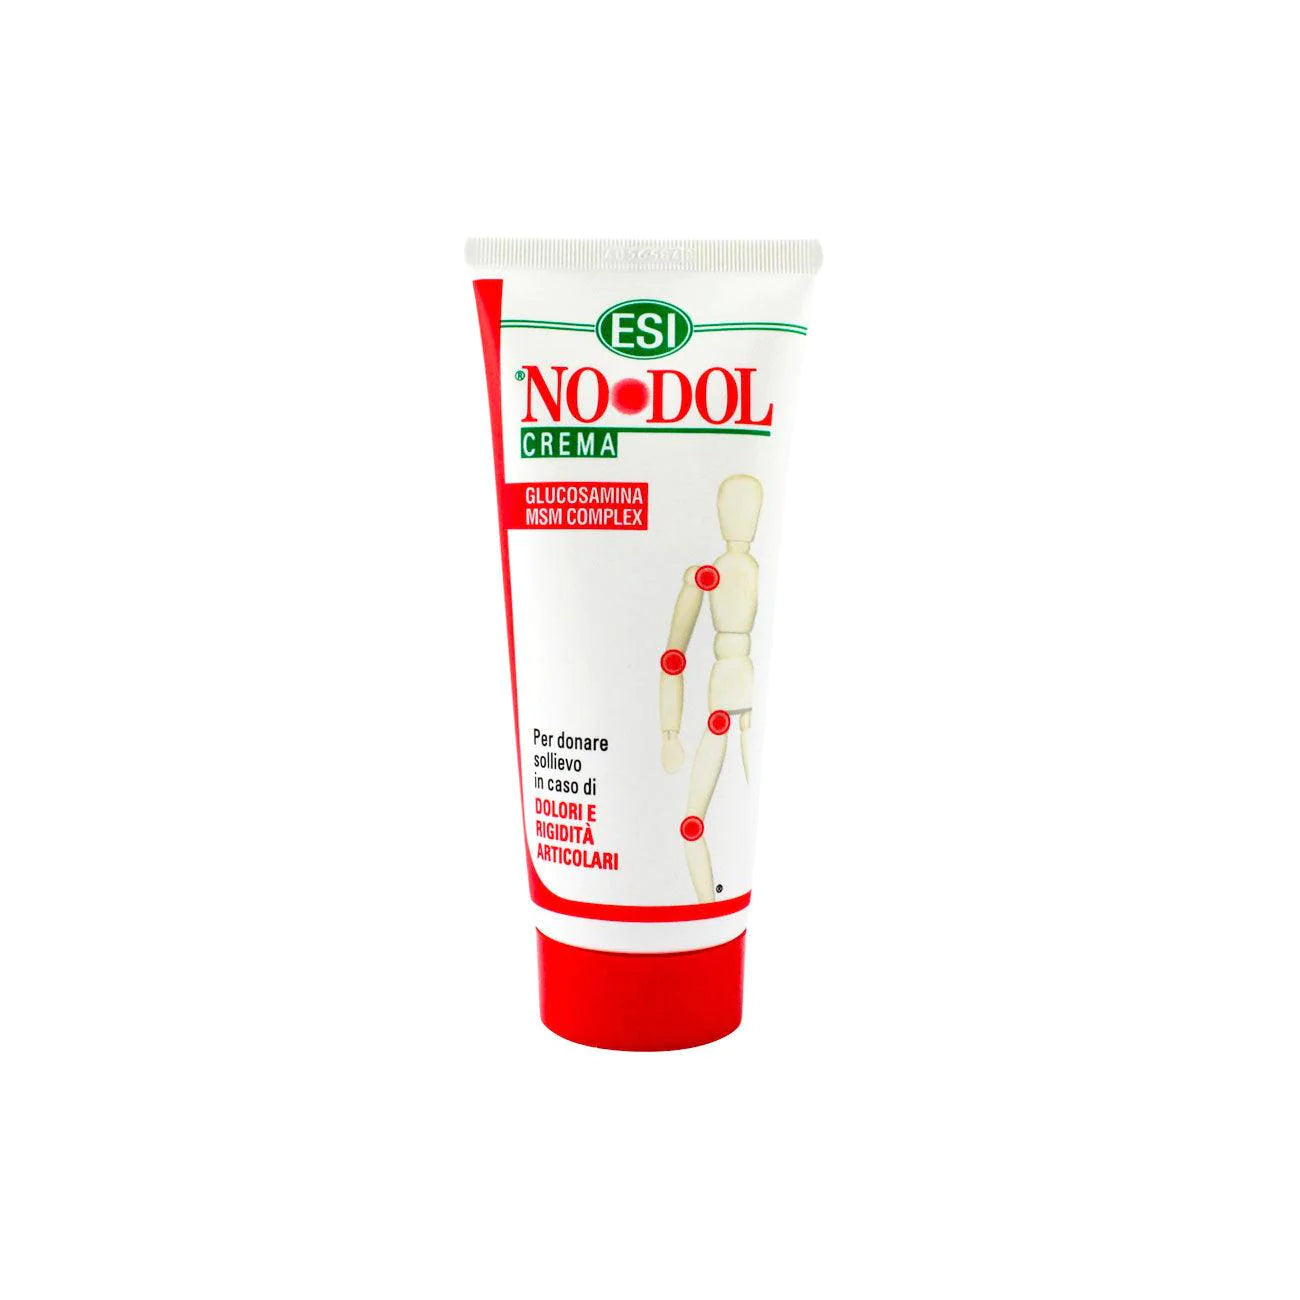 ESI Nodol Cream -100ml-